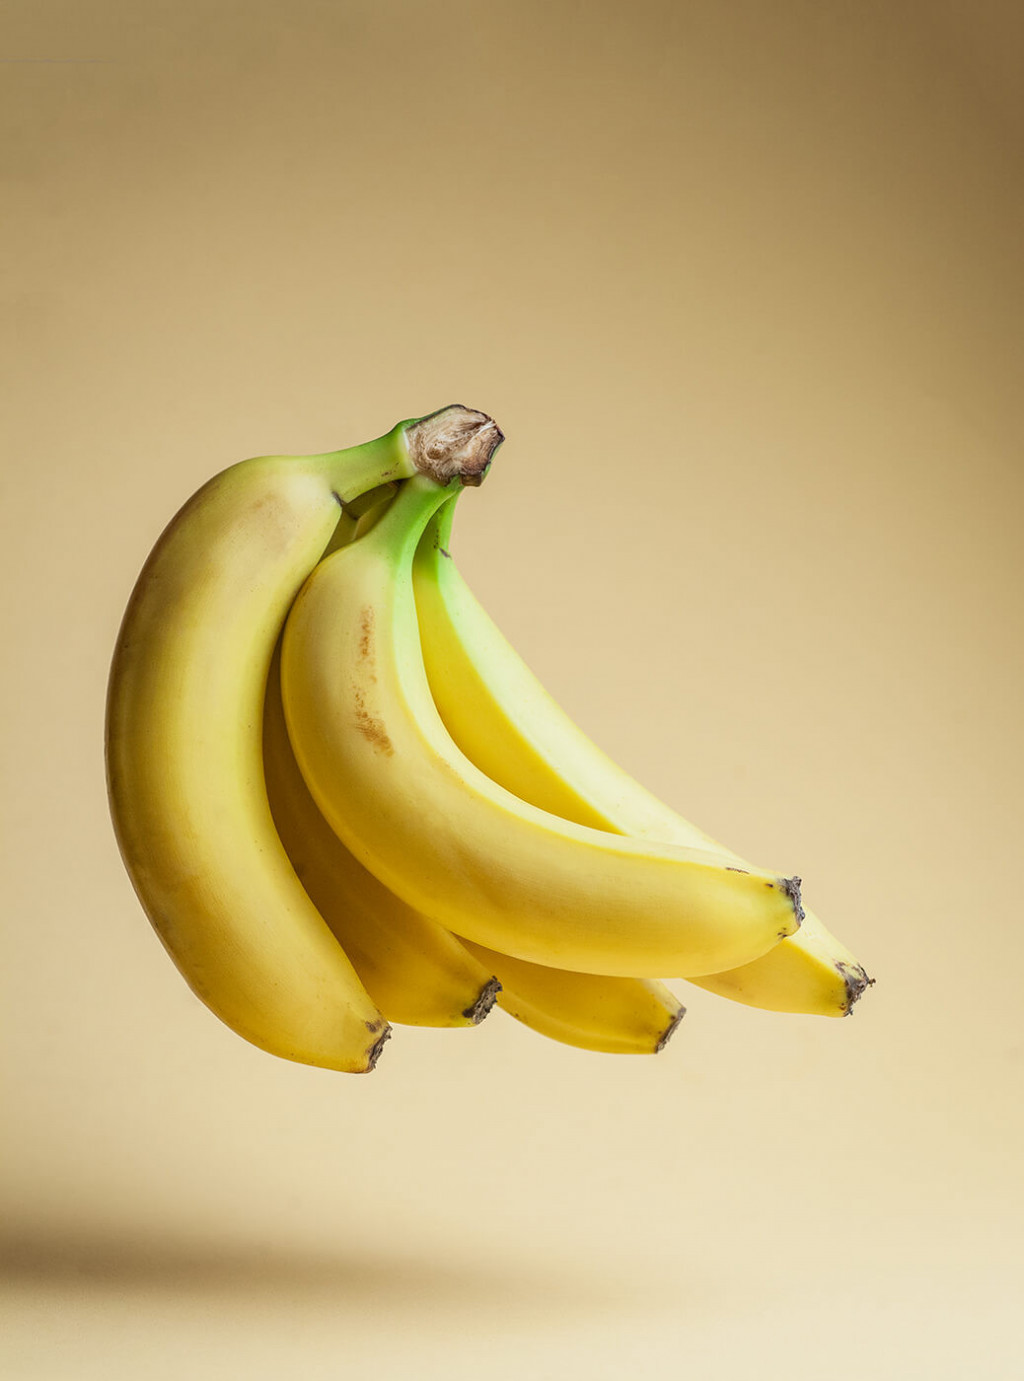 Dojrzałe banany